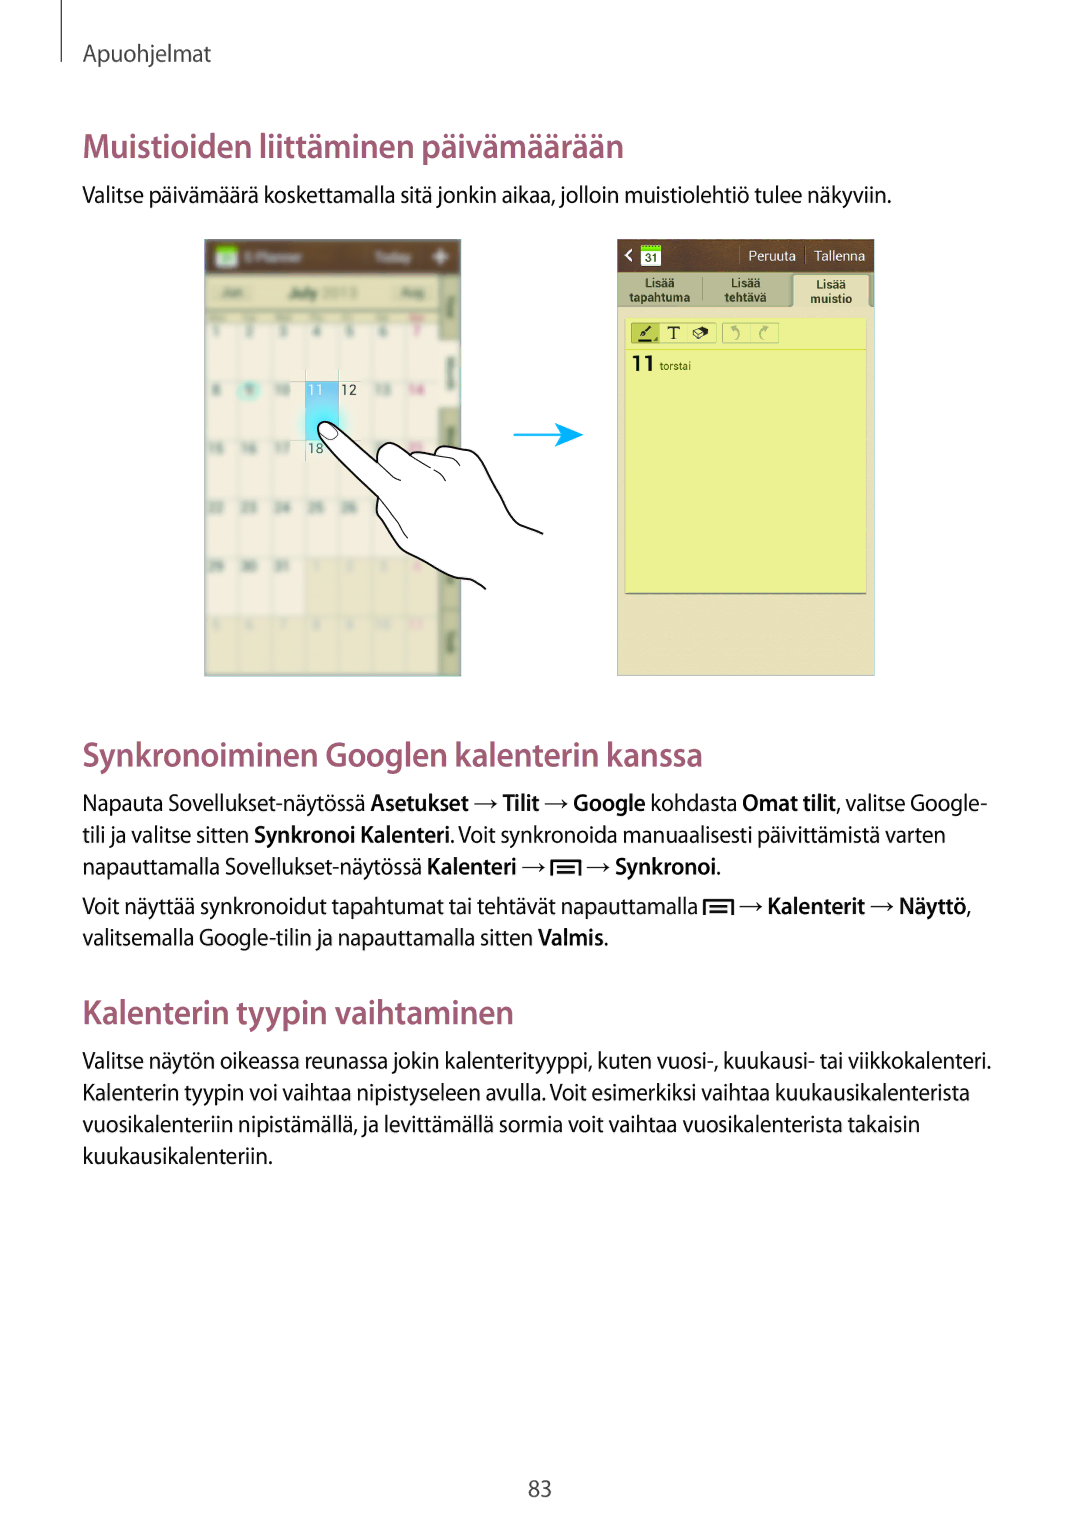 Samsung SM-G3815HKANEE, SM-G3815RWANEE manual Muistioiden liittäminen päivämäärään, Synkronoiminen Googlen kalenterin kanssa 